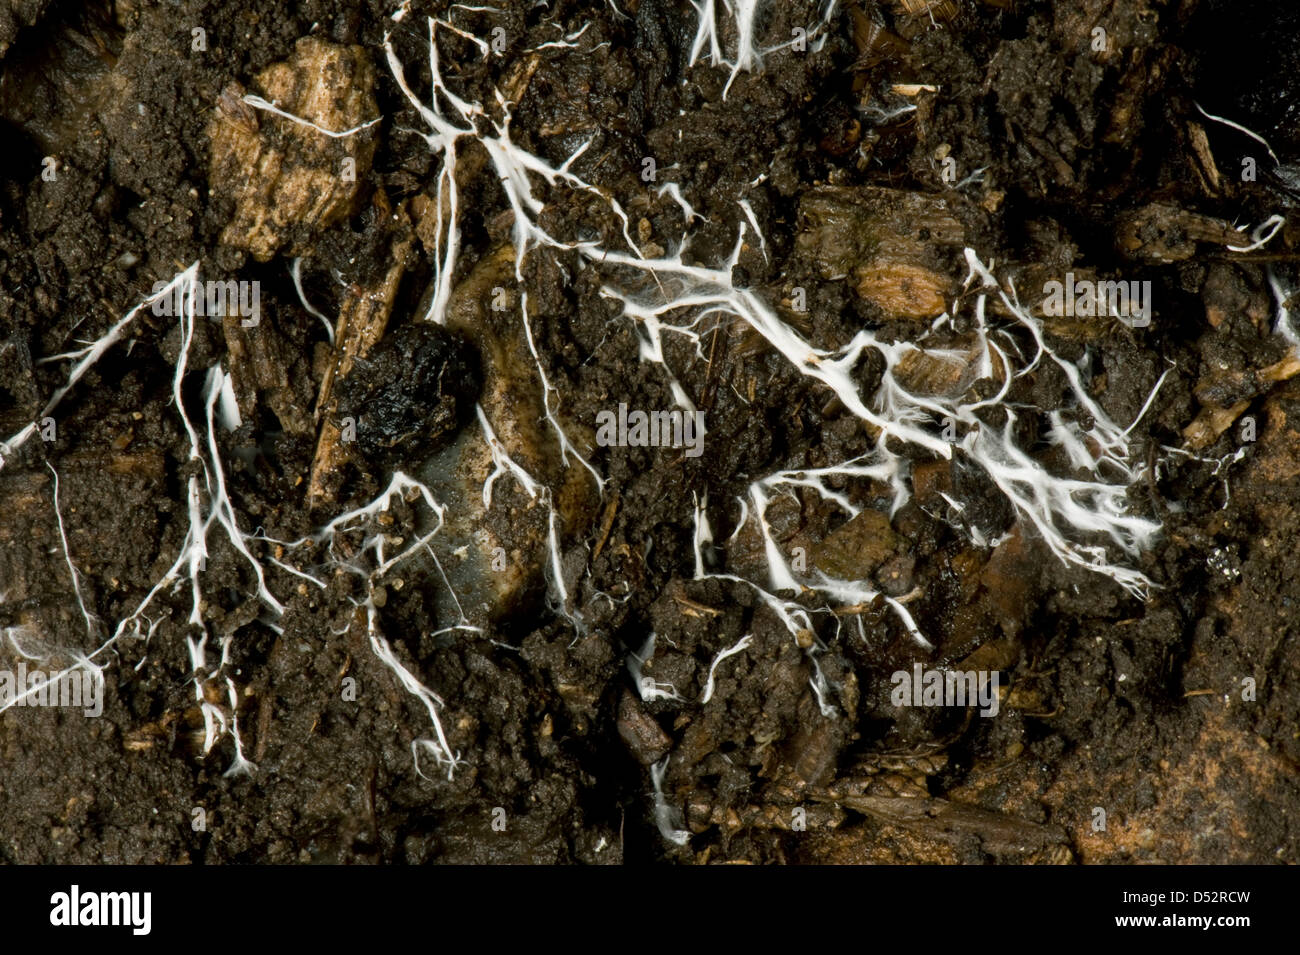 Hilos ramificados de micelio de hongos michorrizales en suelo orgánico Foto de stock